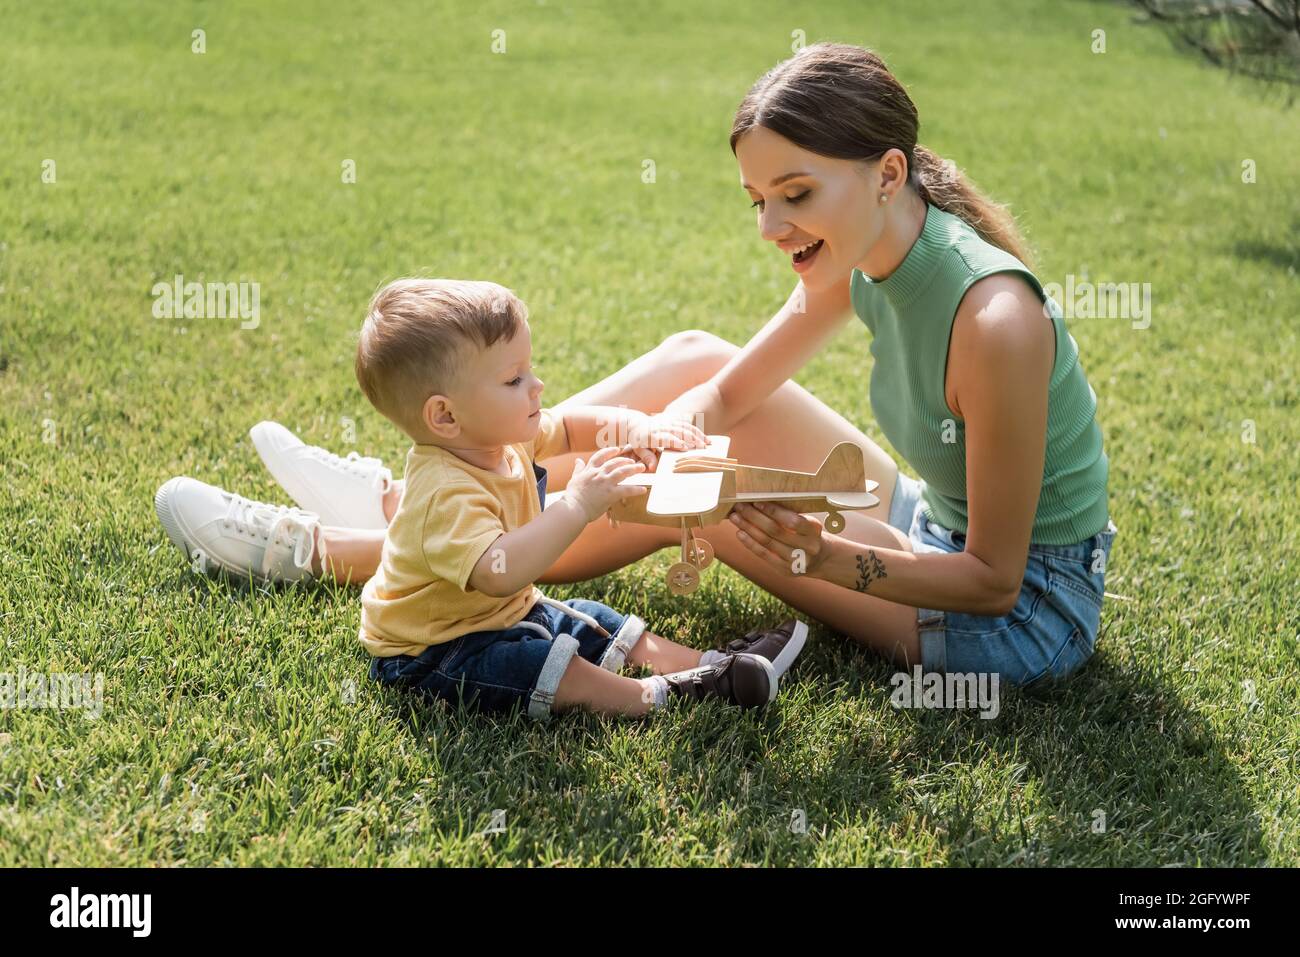 madre allegra che tiene il biplano giocattolo vicino al figlio del bambino sull'erba Foto Stock